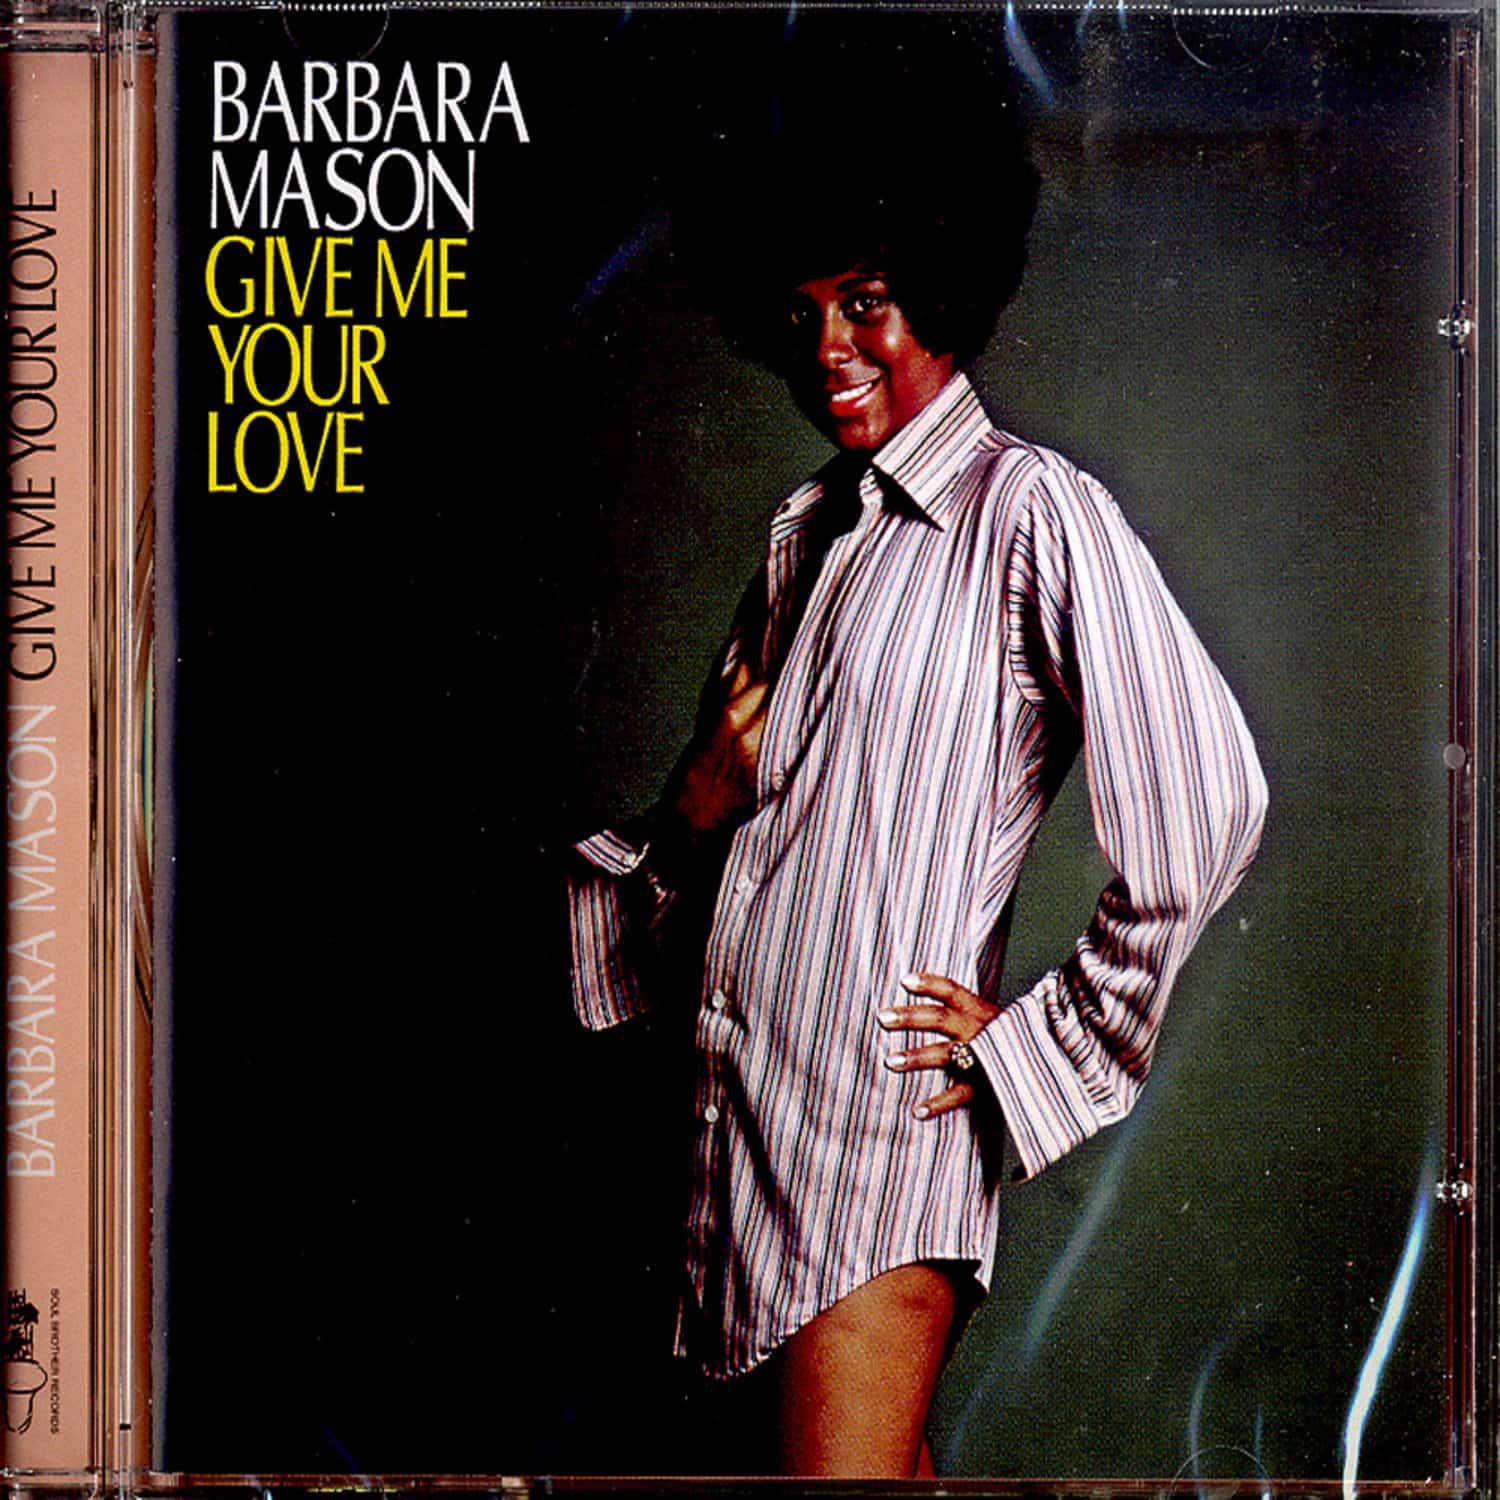 Barbara Mason - GIVE ME YOUR LOVE 